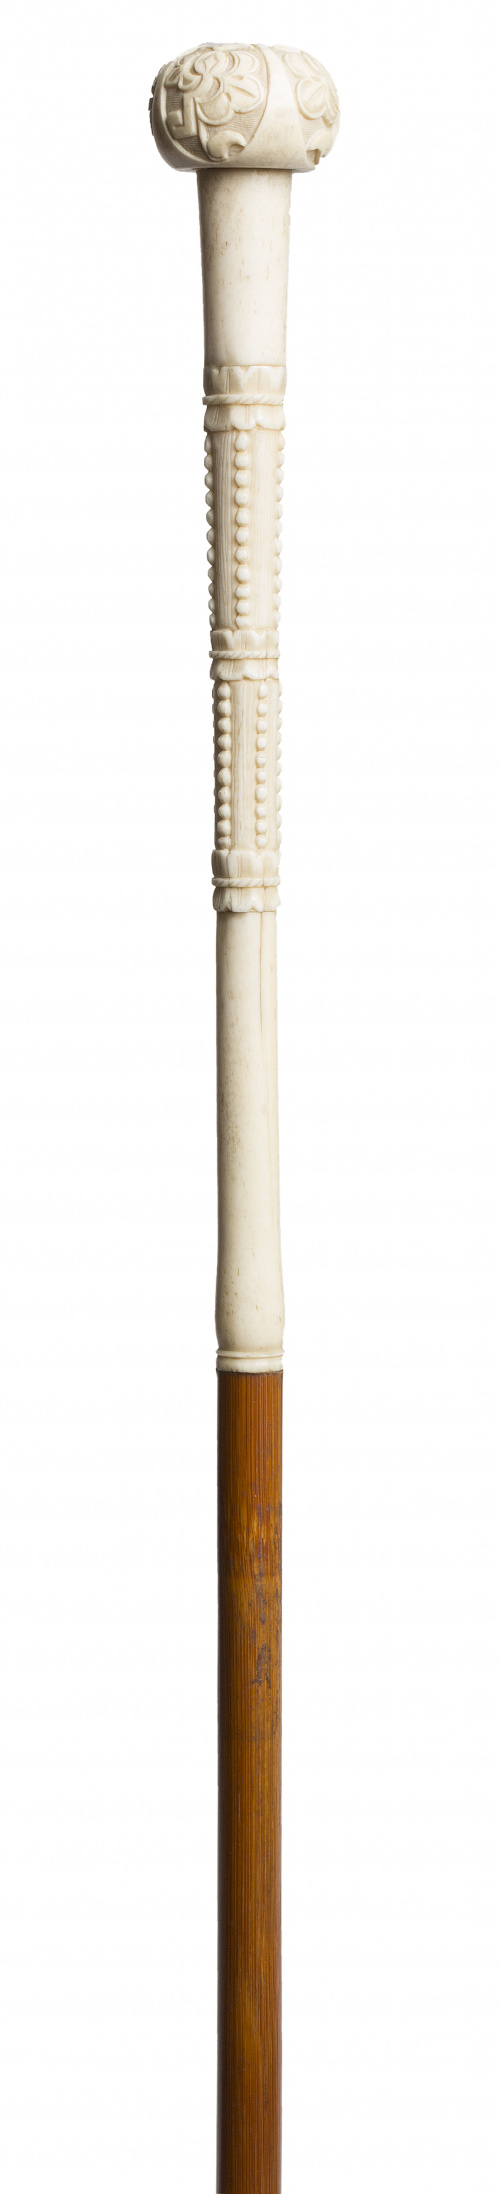 Bastón de marfil tallado, rematado por bola, S. XIX